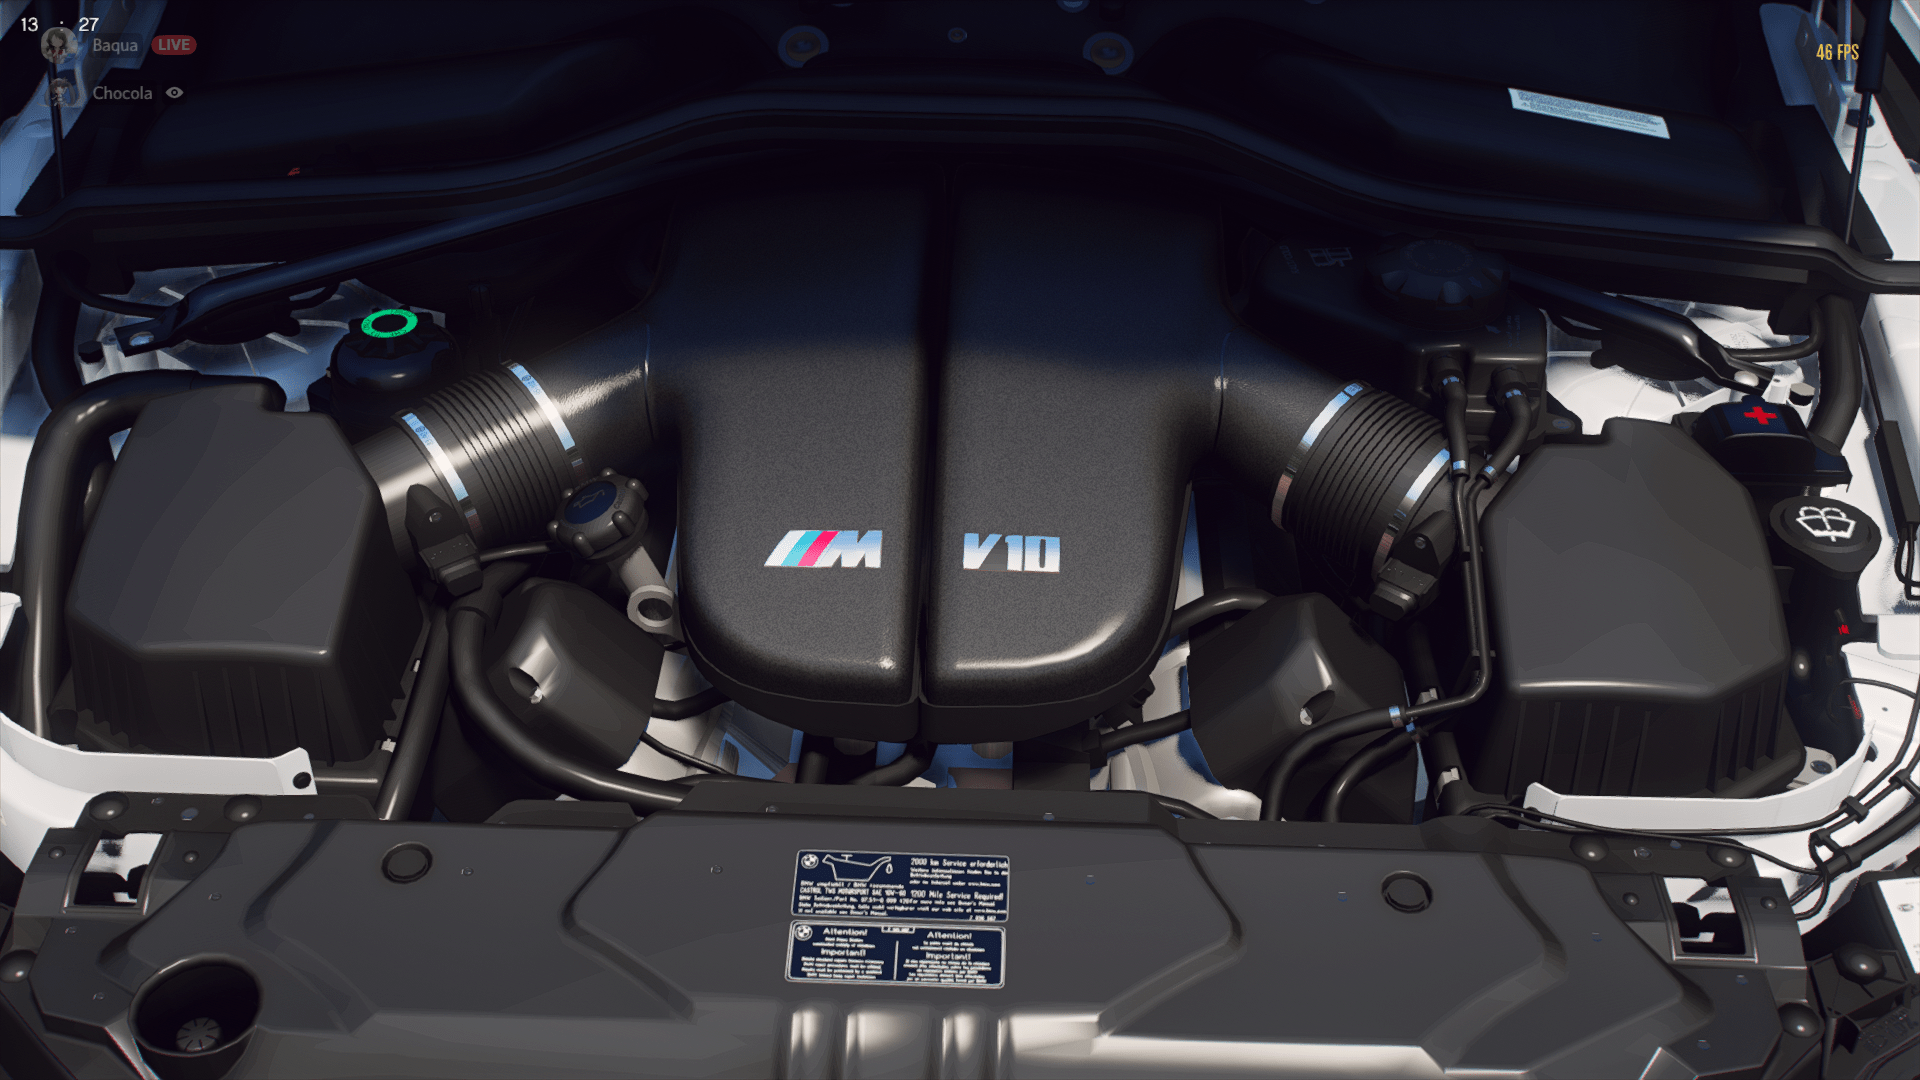 BMW E60 M5 / E64 M6 S85 V10 Engine Sound [OIV Add On / FiveM | Sound] -  